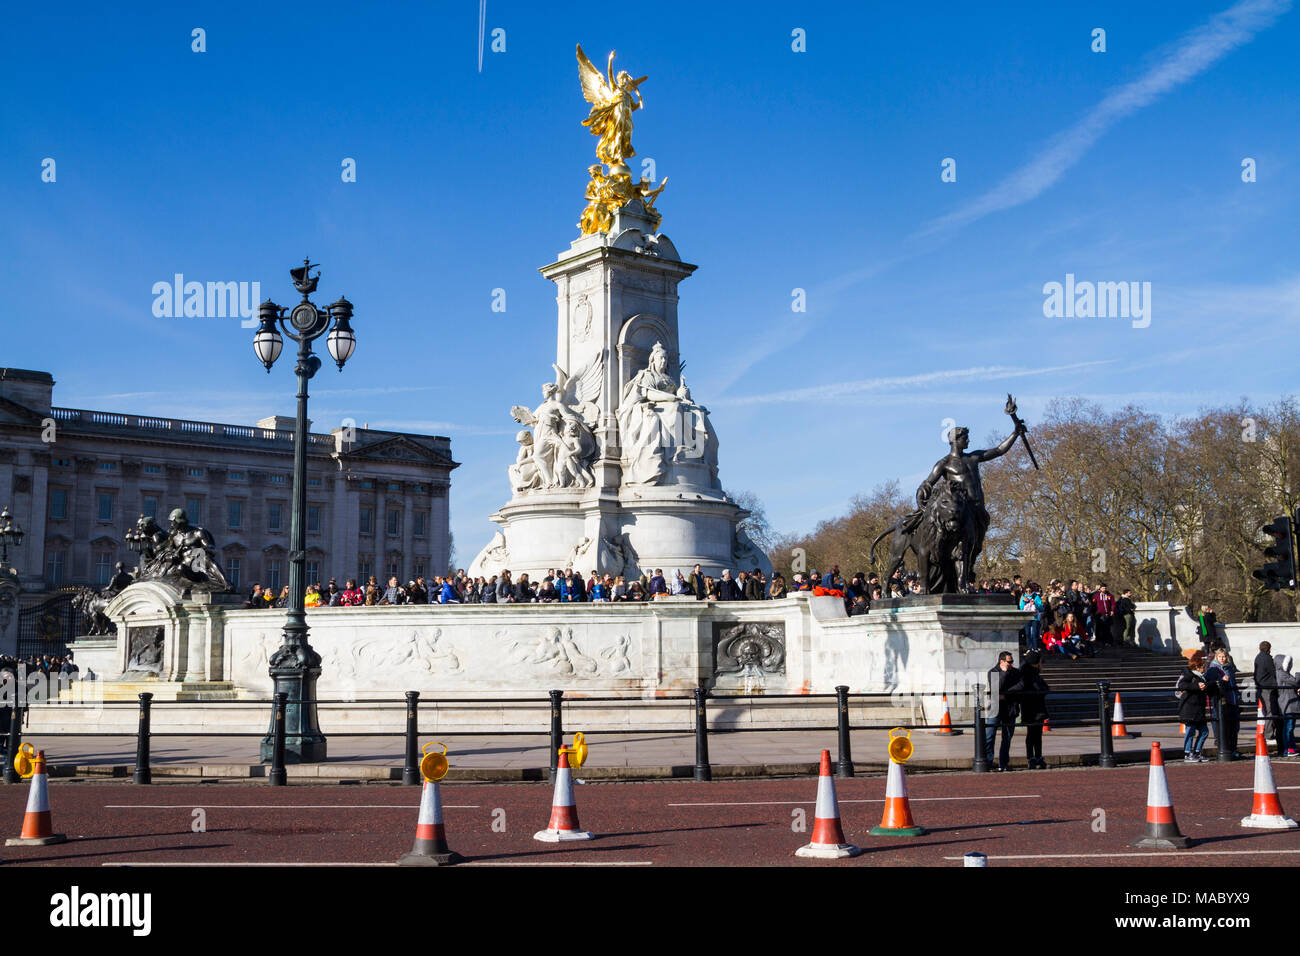 Foule, les touristes se sont réunis au Monument de la reine Victoria, statue à l'extérieur de Buckingham Palace, Londres UK mall statue concept britannique mall Grande-Bretagne Banque D'Images